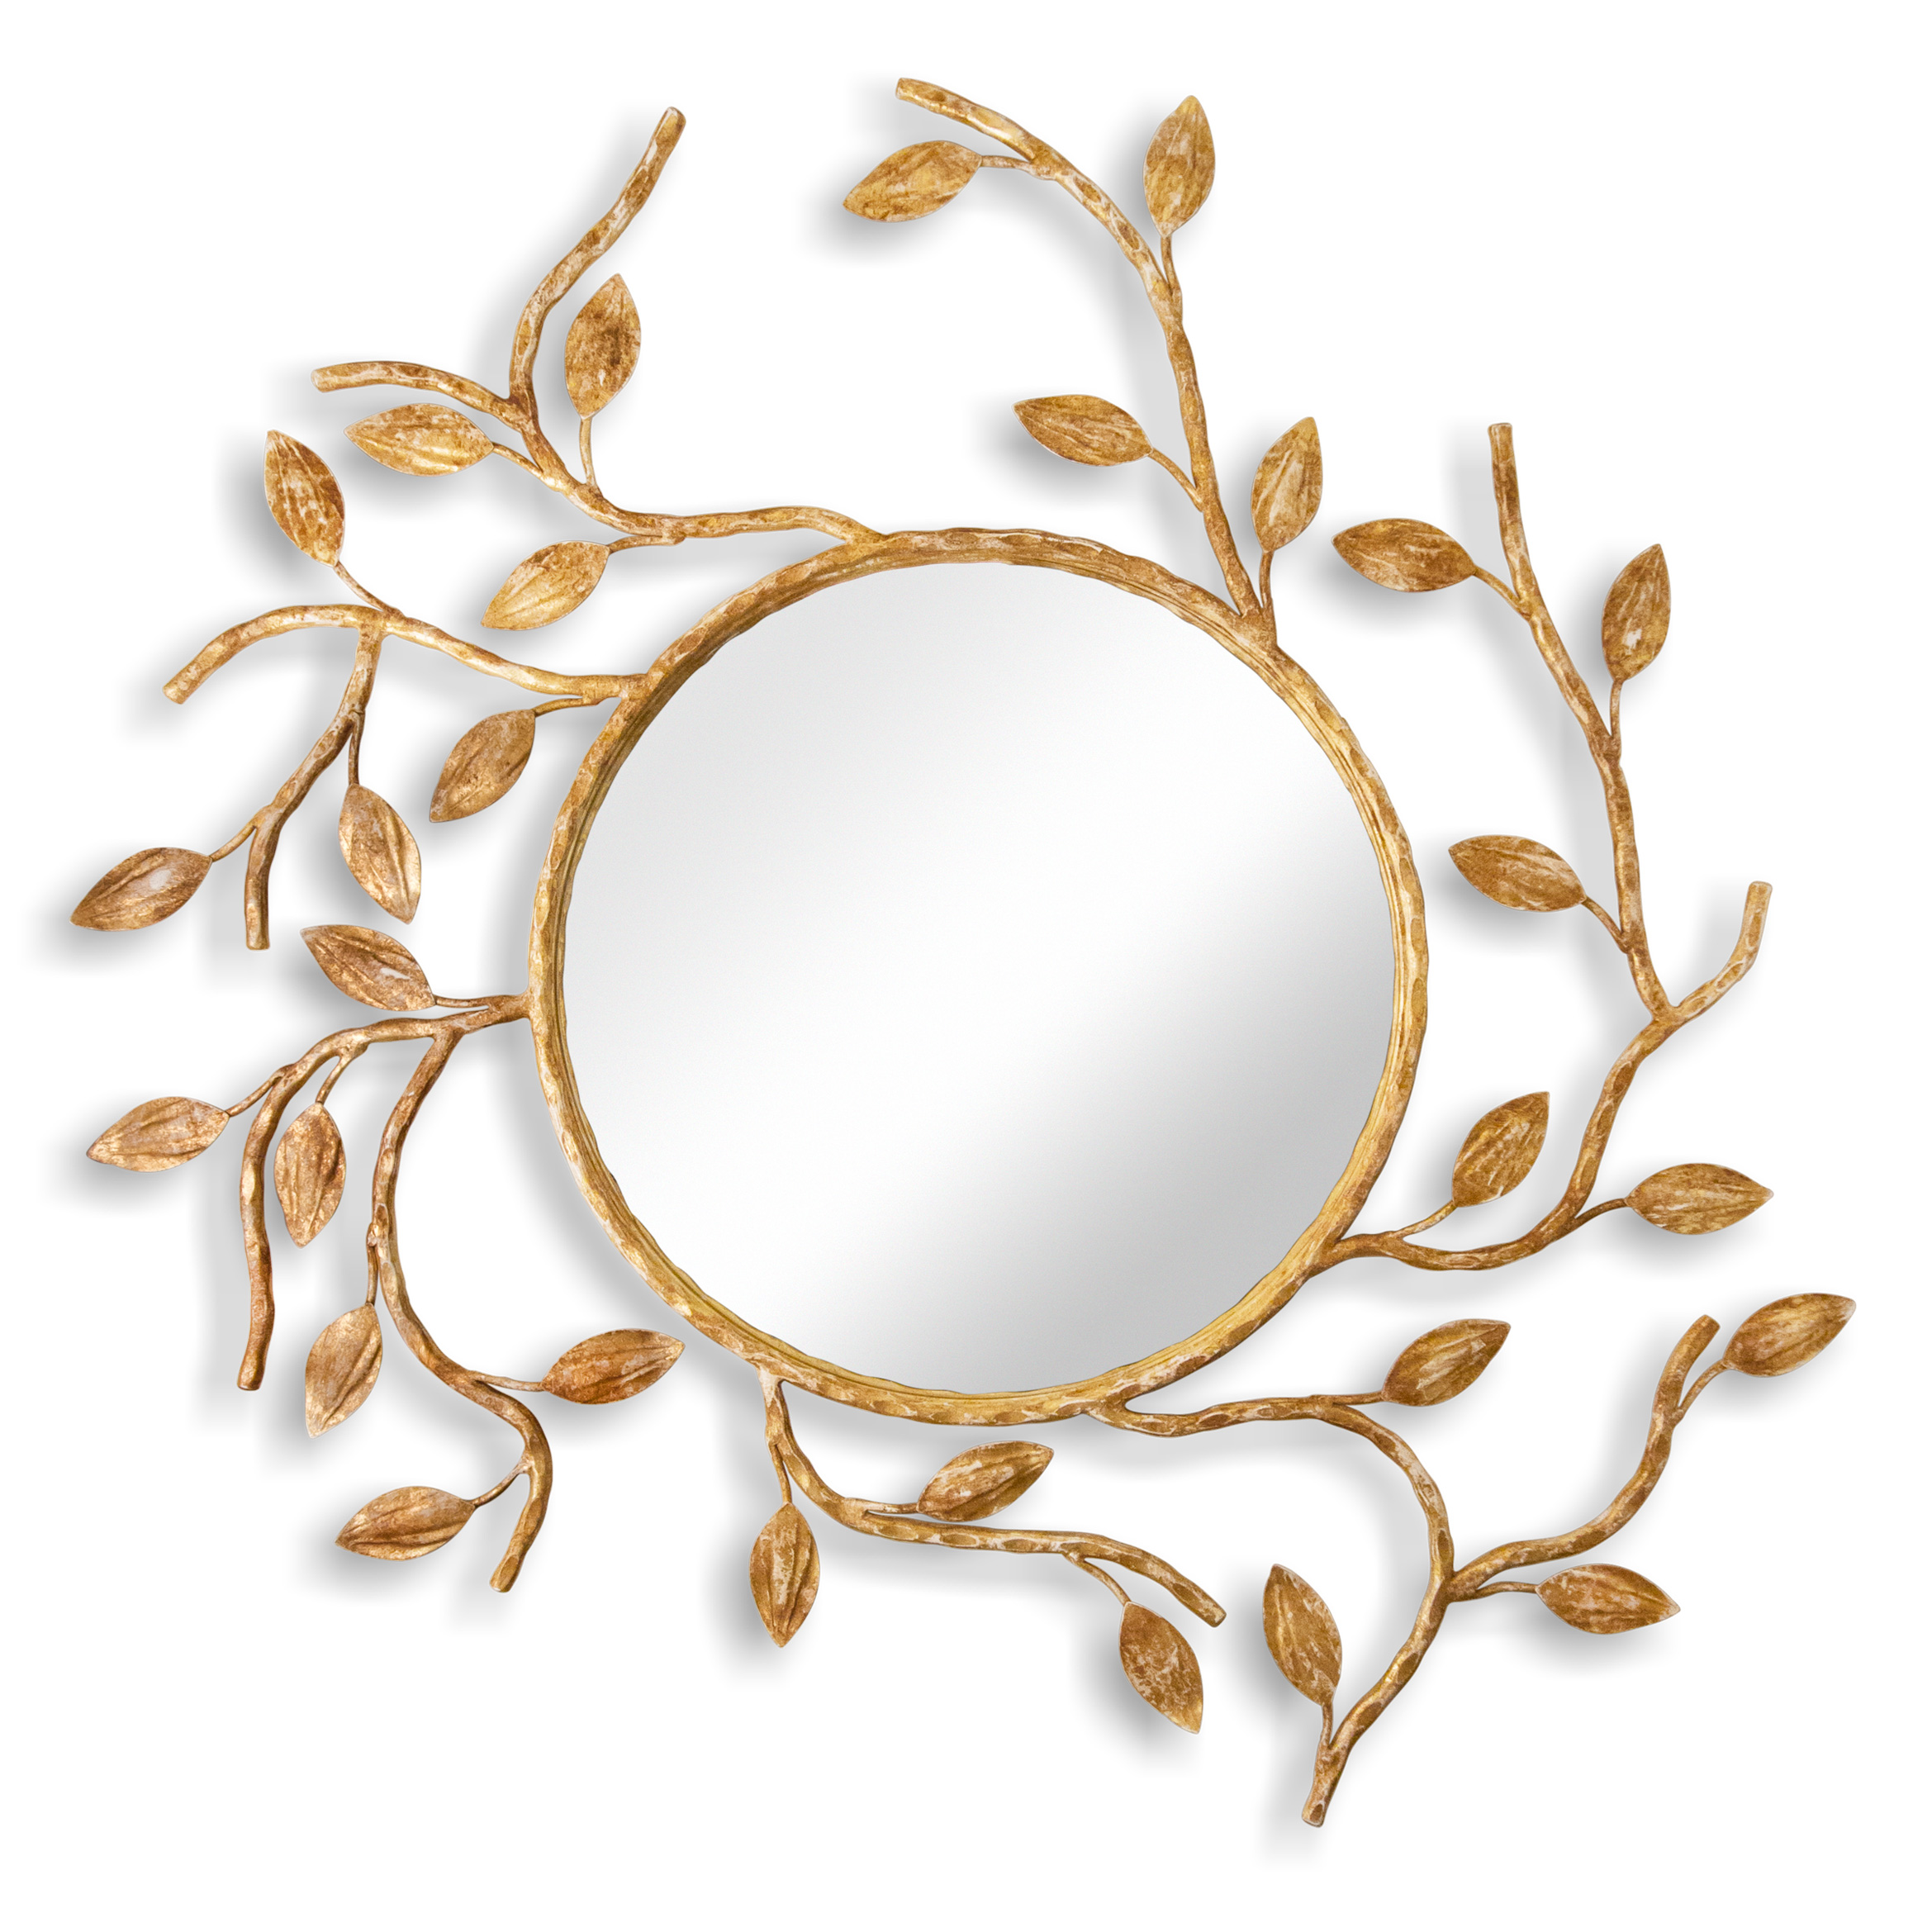 Купить Настенное зеркало Foliage Round Contemporary Mirror в интернет-магазине roooms.ru